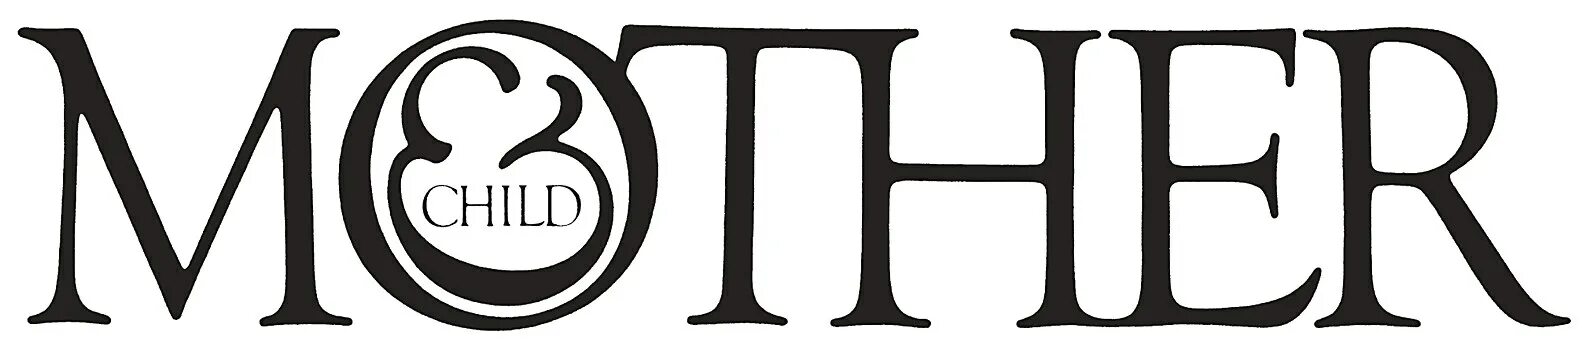 Херб Любалин. Герб Любалин. Herb Lubalin logo. Типографика герба Любалина. Mothers forums